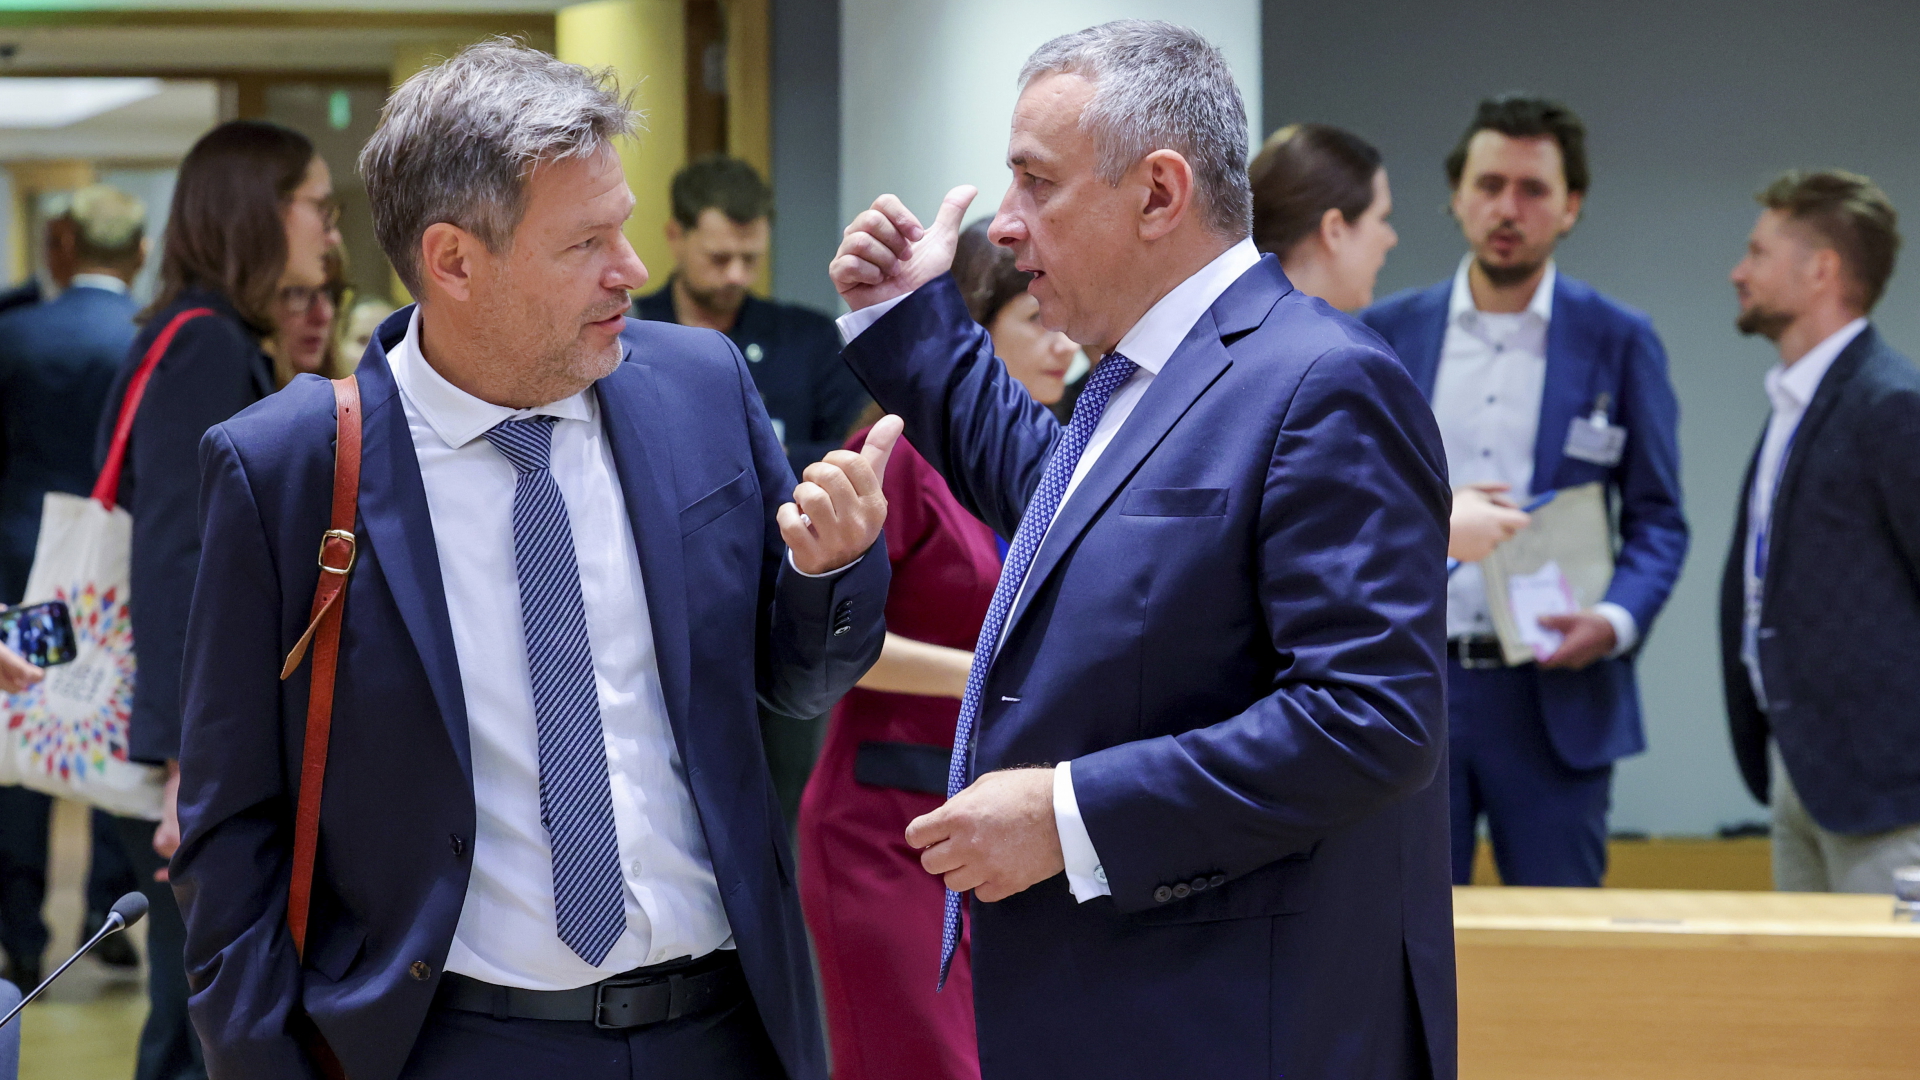 Tschechiens Handelsminister Sikela spricht mit Wirtschaftsminister Habeck während eines Treffens der EU-Energieminister im Gebäude des Europäischen Rates.